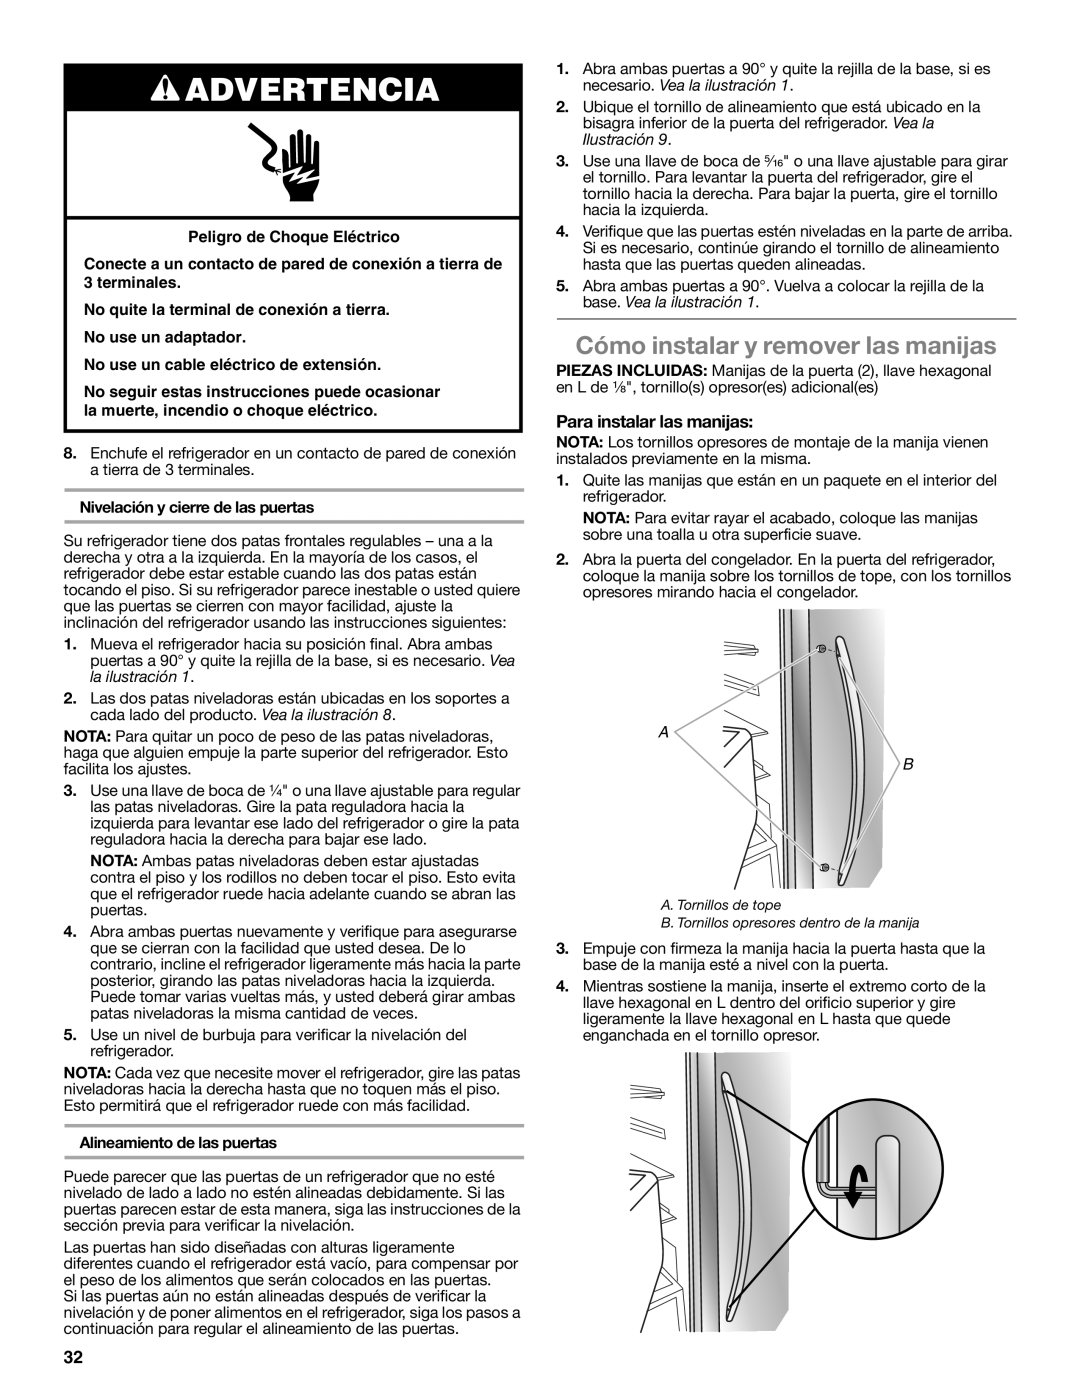 Whirlpool W10632883A installation instructions Cómo instalar y remover las manijas, Para instalar las manijas, Advertencia 